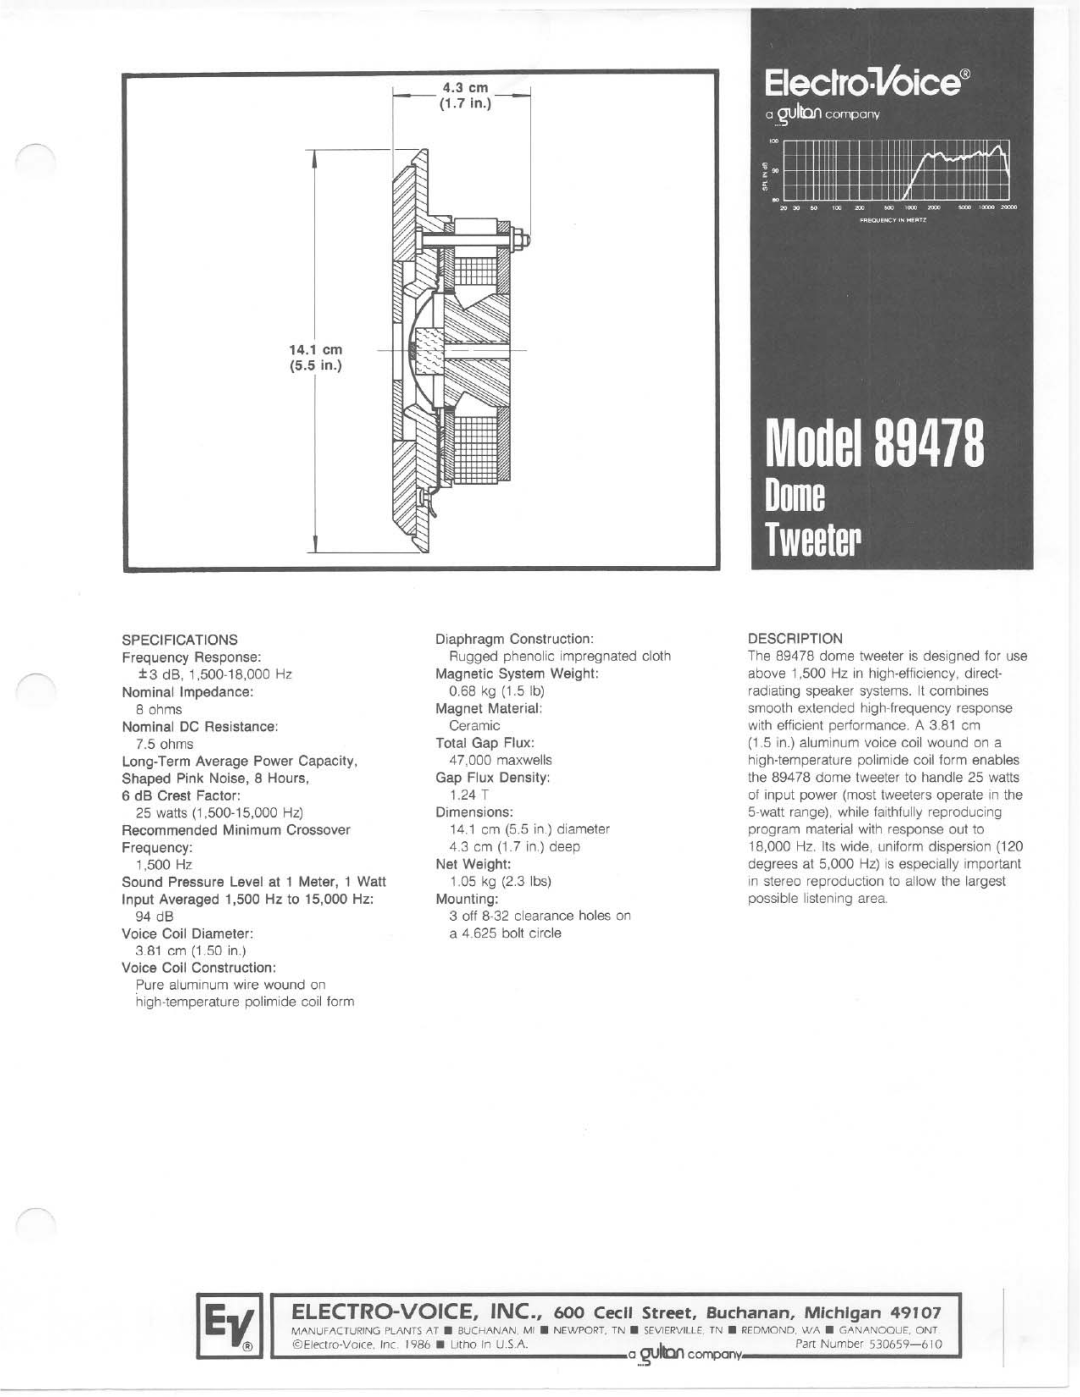 Electro-Voice 89478 manual 